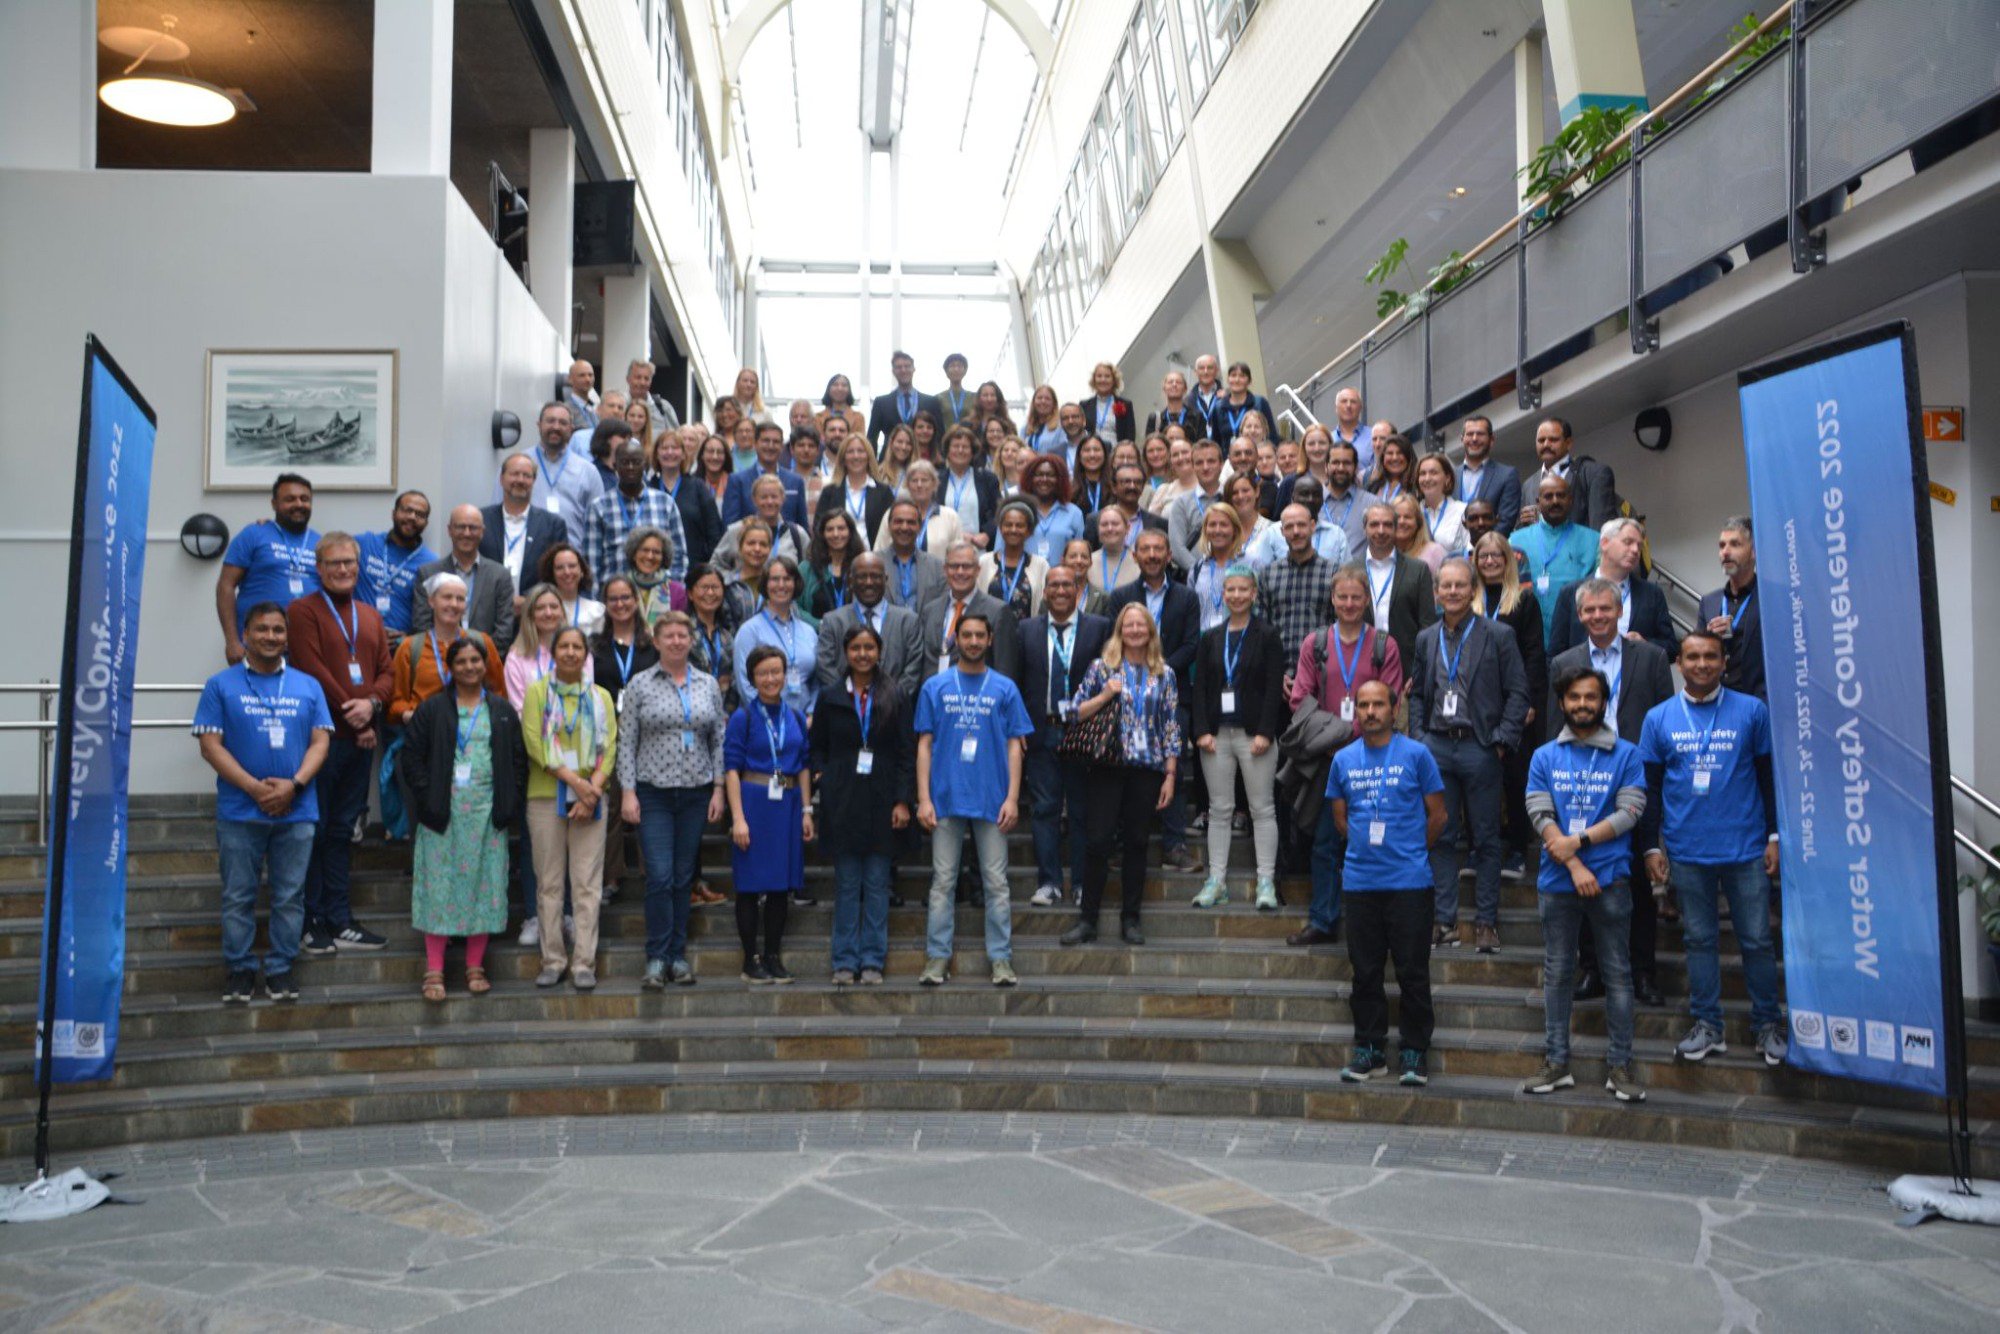 Viacqua alla Water Safety Conference in Norvegia p